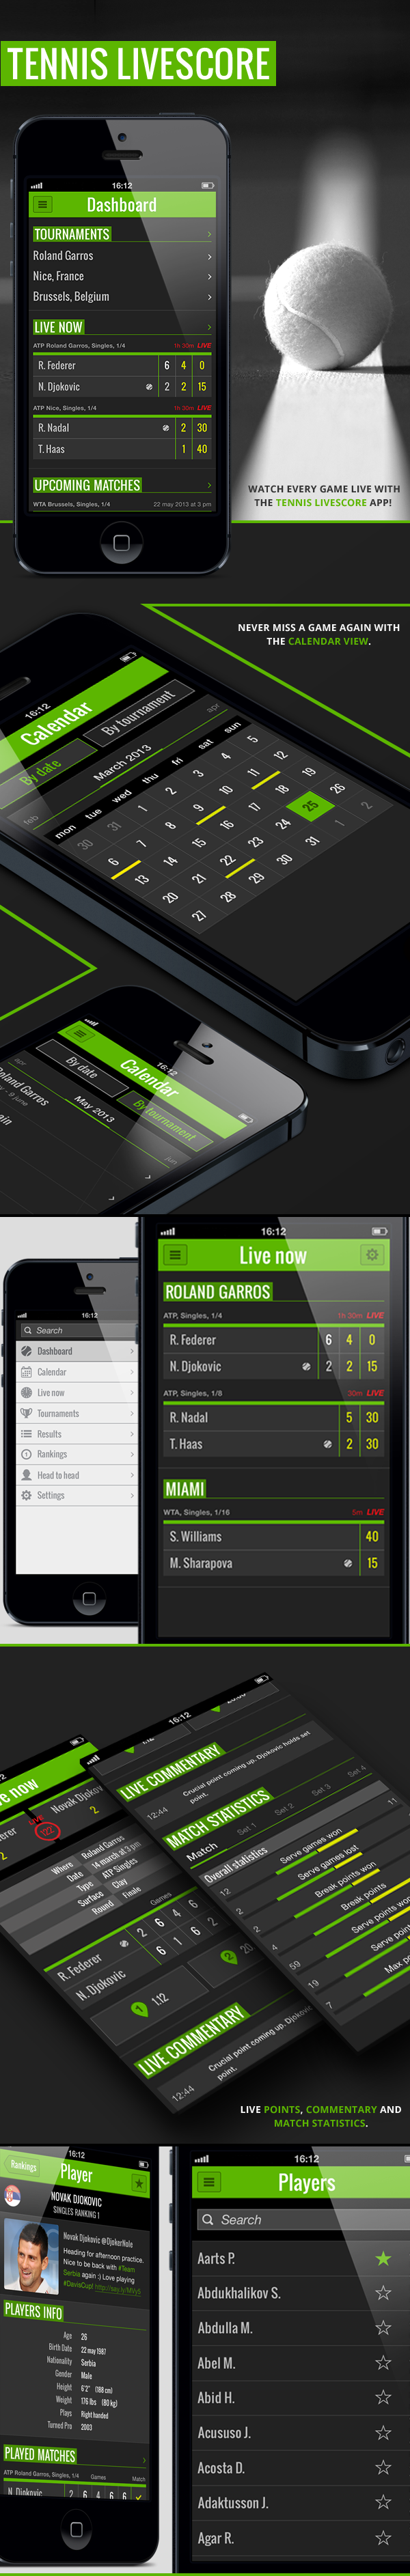 Tennis Livescore App on Behance